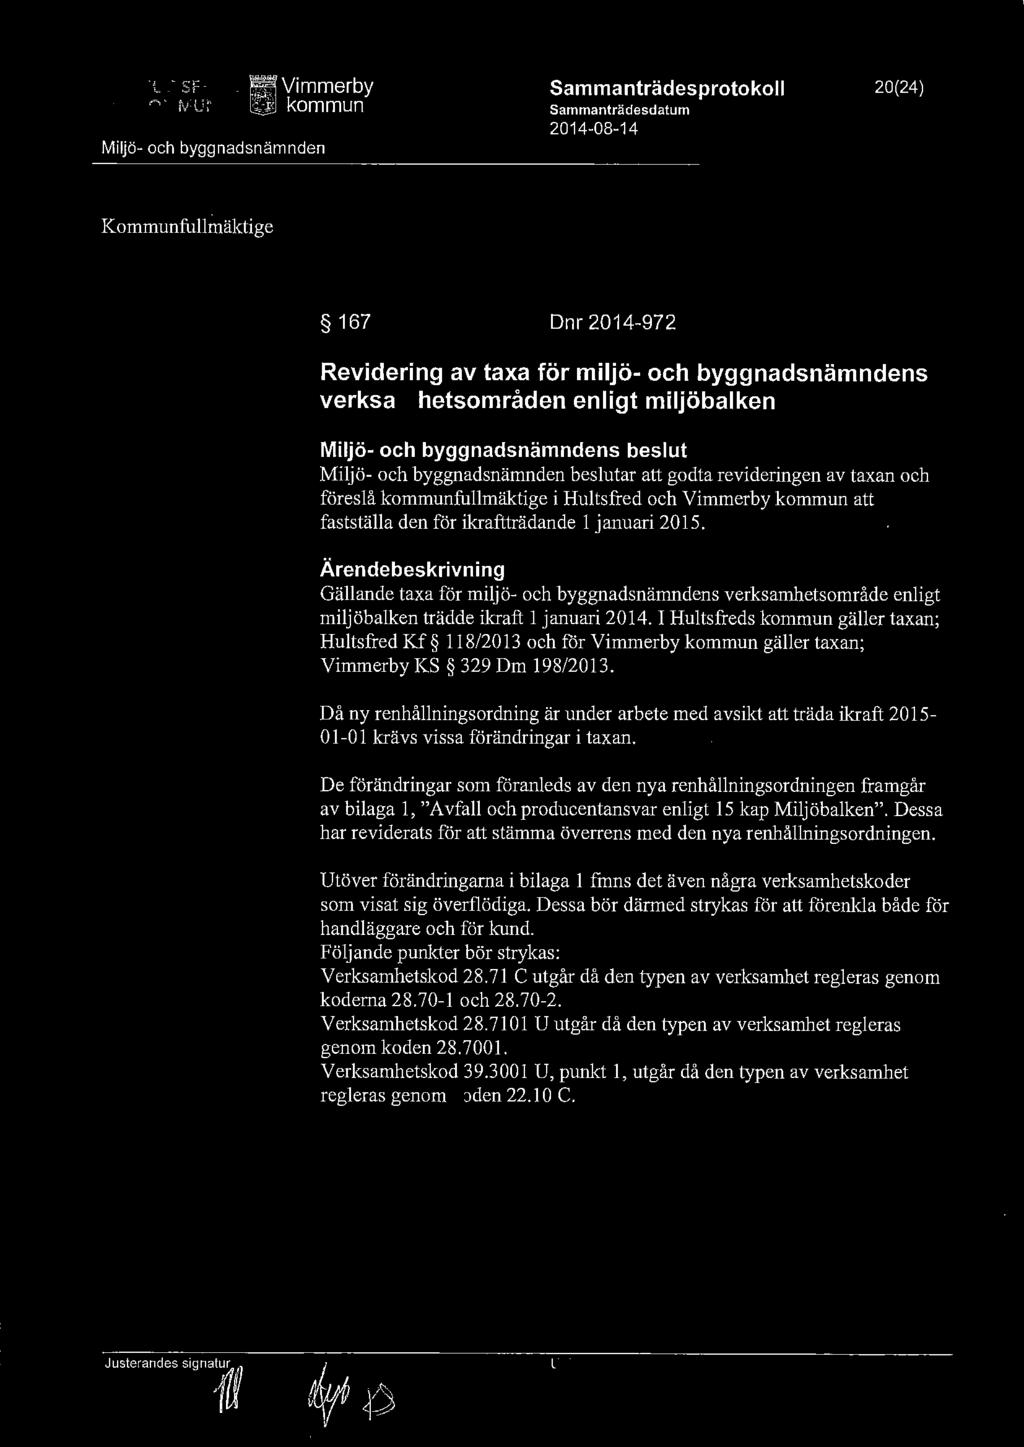 "l - SF,...,. IV U ~ _ ~ Vimmerby ~ kommun Miljö- och byggnadsnämnden Sammanträdesprotokoll Sammanträdesdatum 2014-08-14 20(24) VIMMERBY KOMMUN 1\0mmunstyrel.